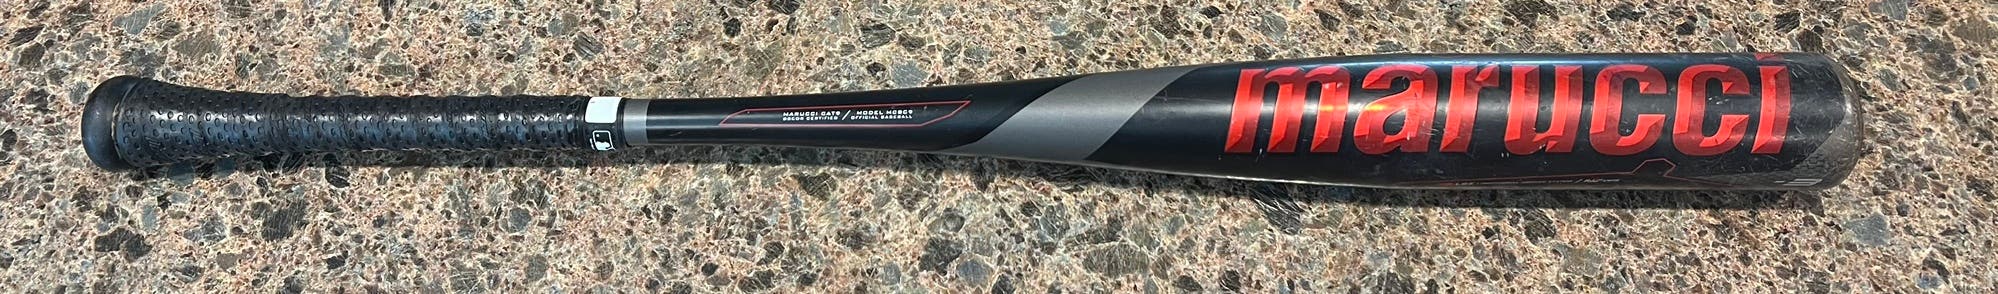 2021 Marucci Cat 9 BBCOR Baseball Bat. 33/30